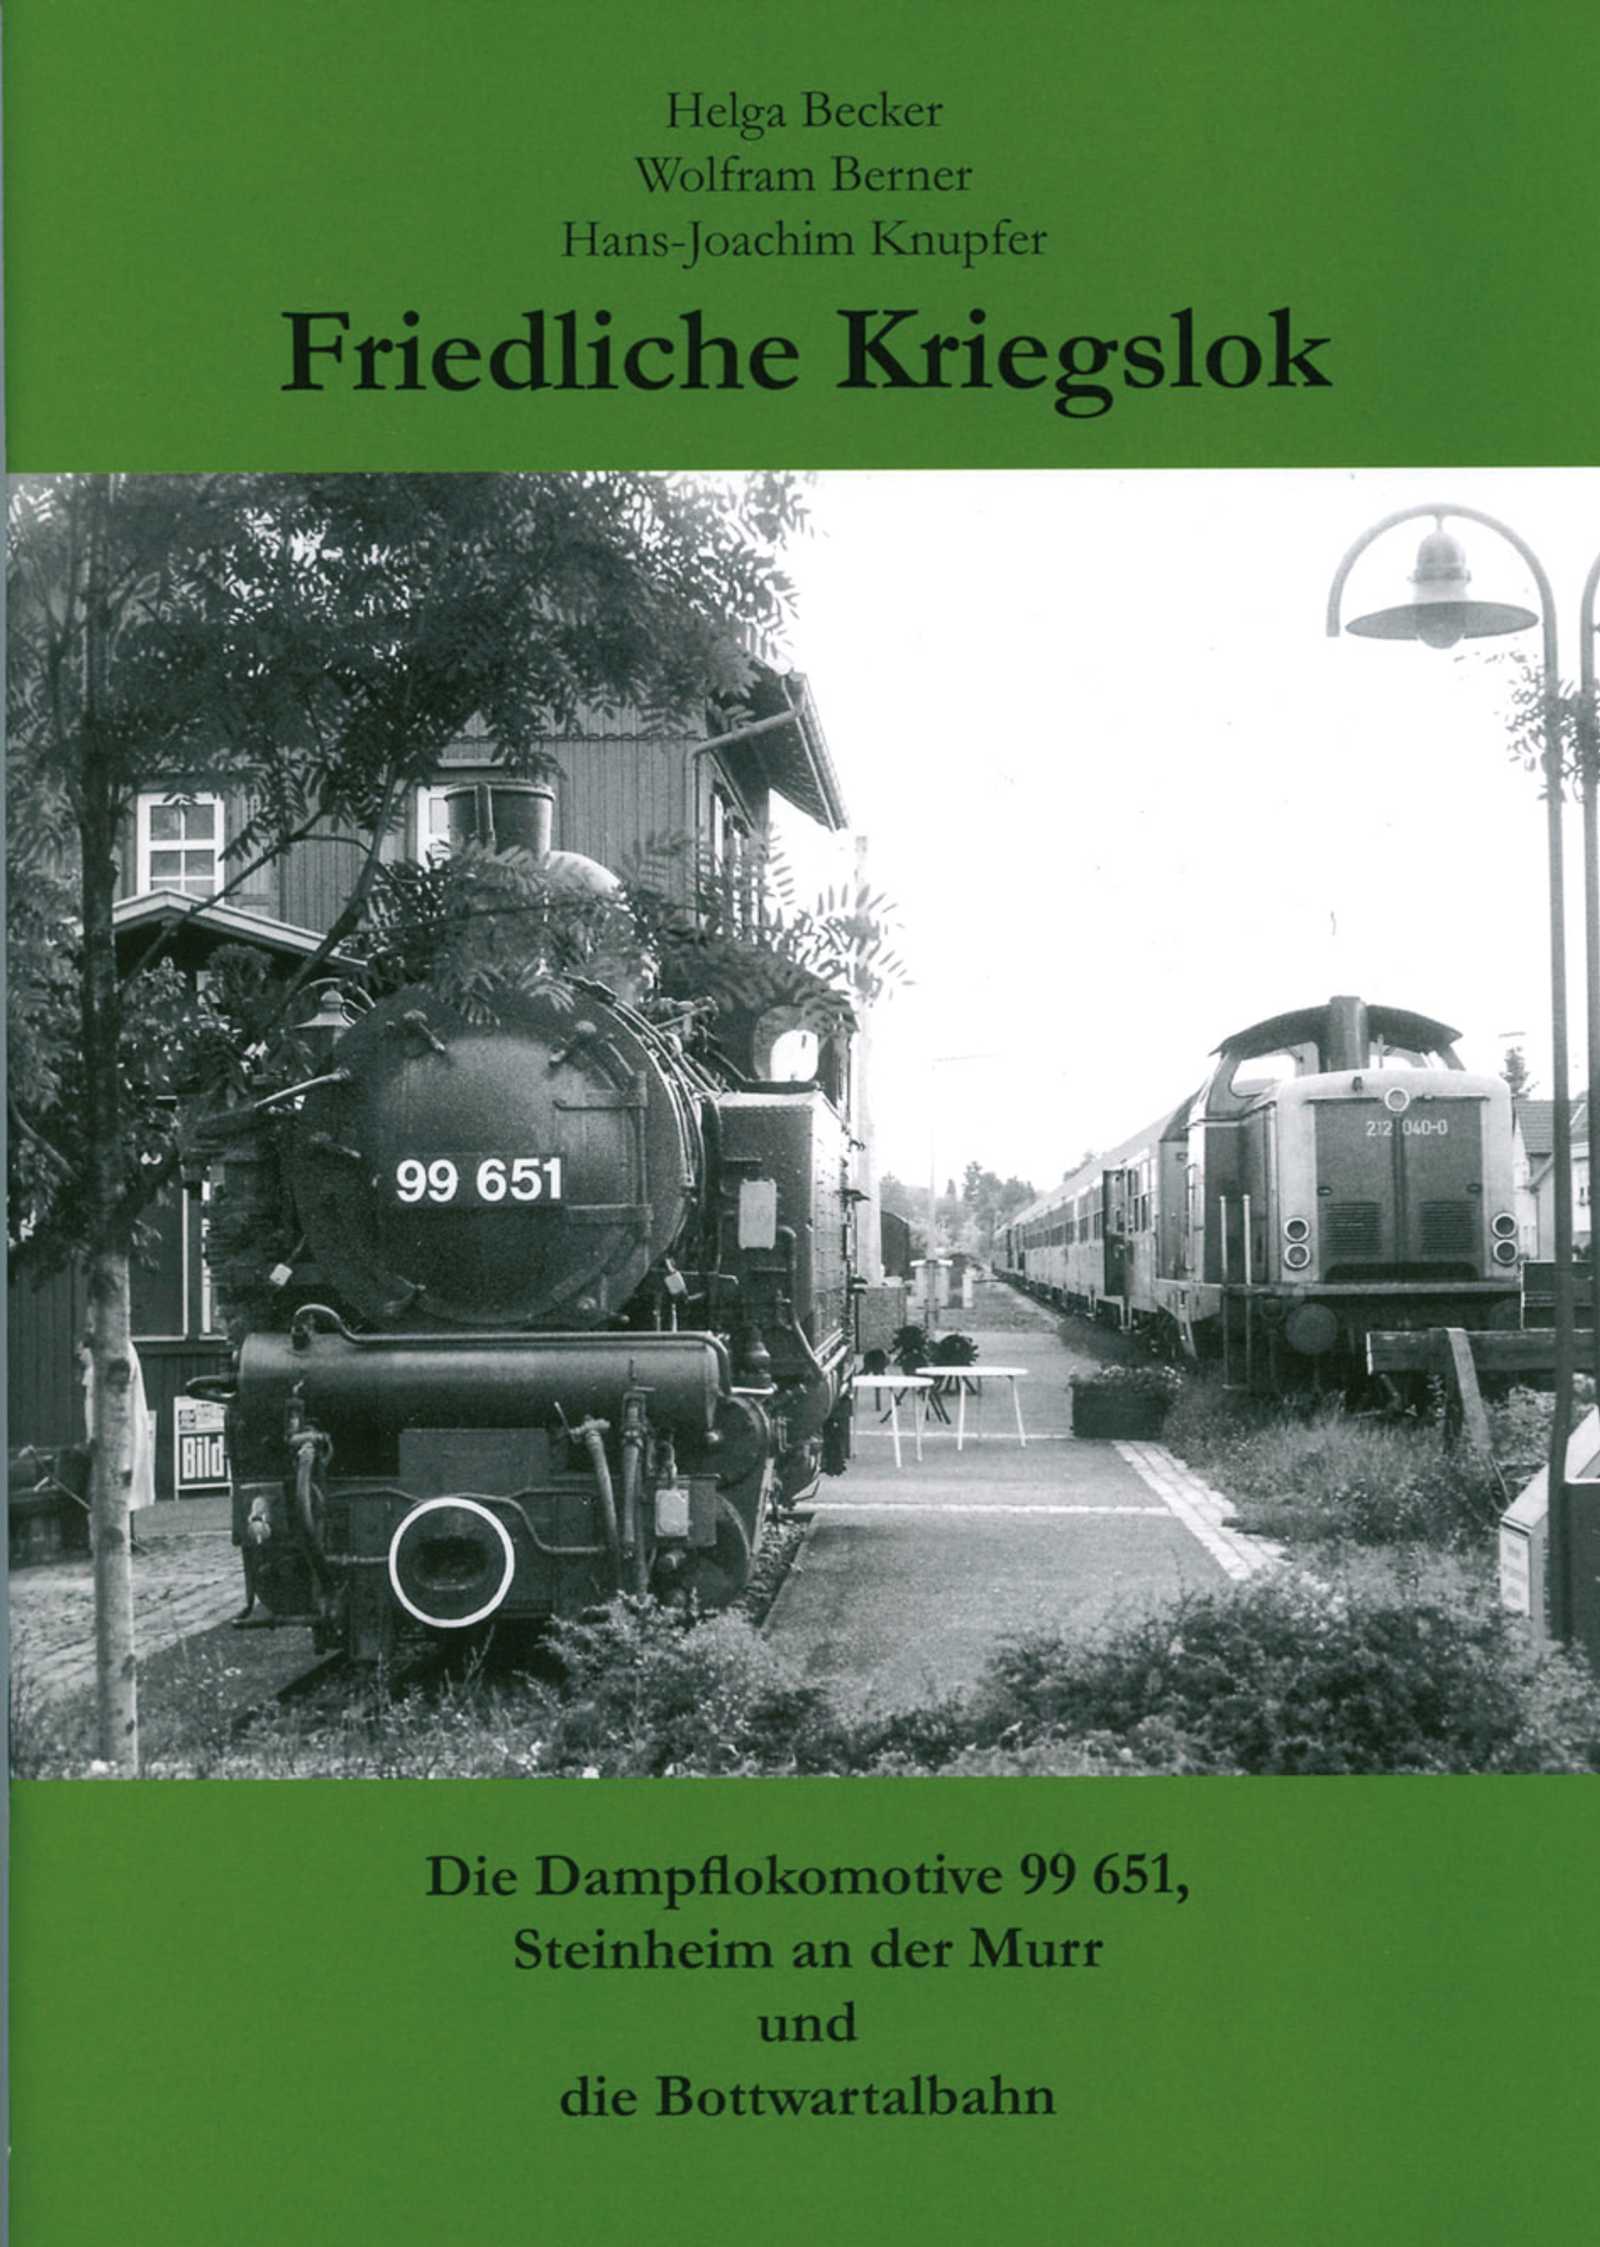 Cover Buch „Friedliche Kriegslok - Die Dampflokomotive 99 651, Steinheim an der Murr und die Bottwartalbahn“